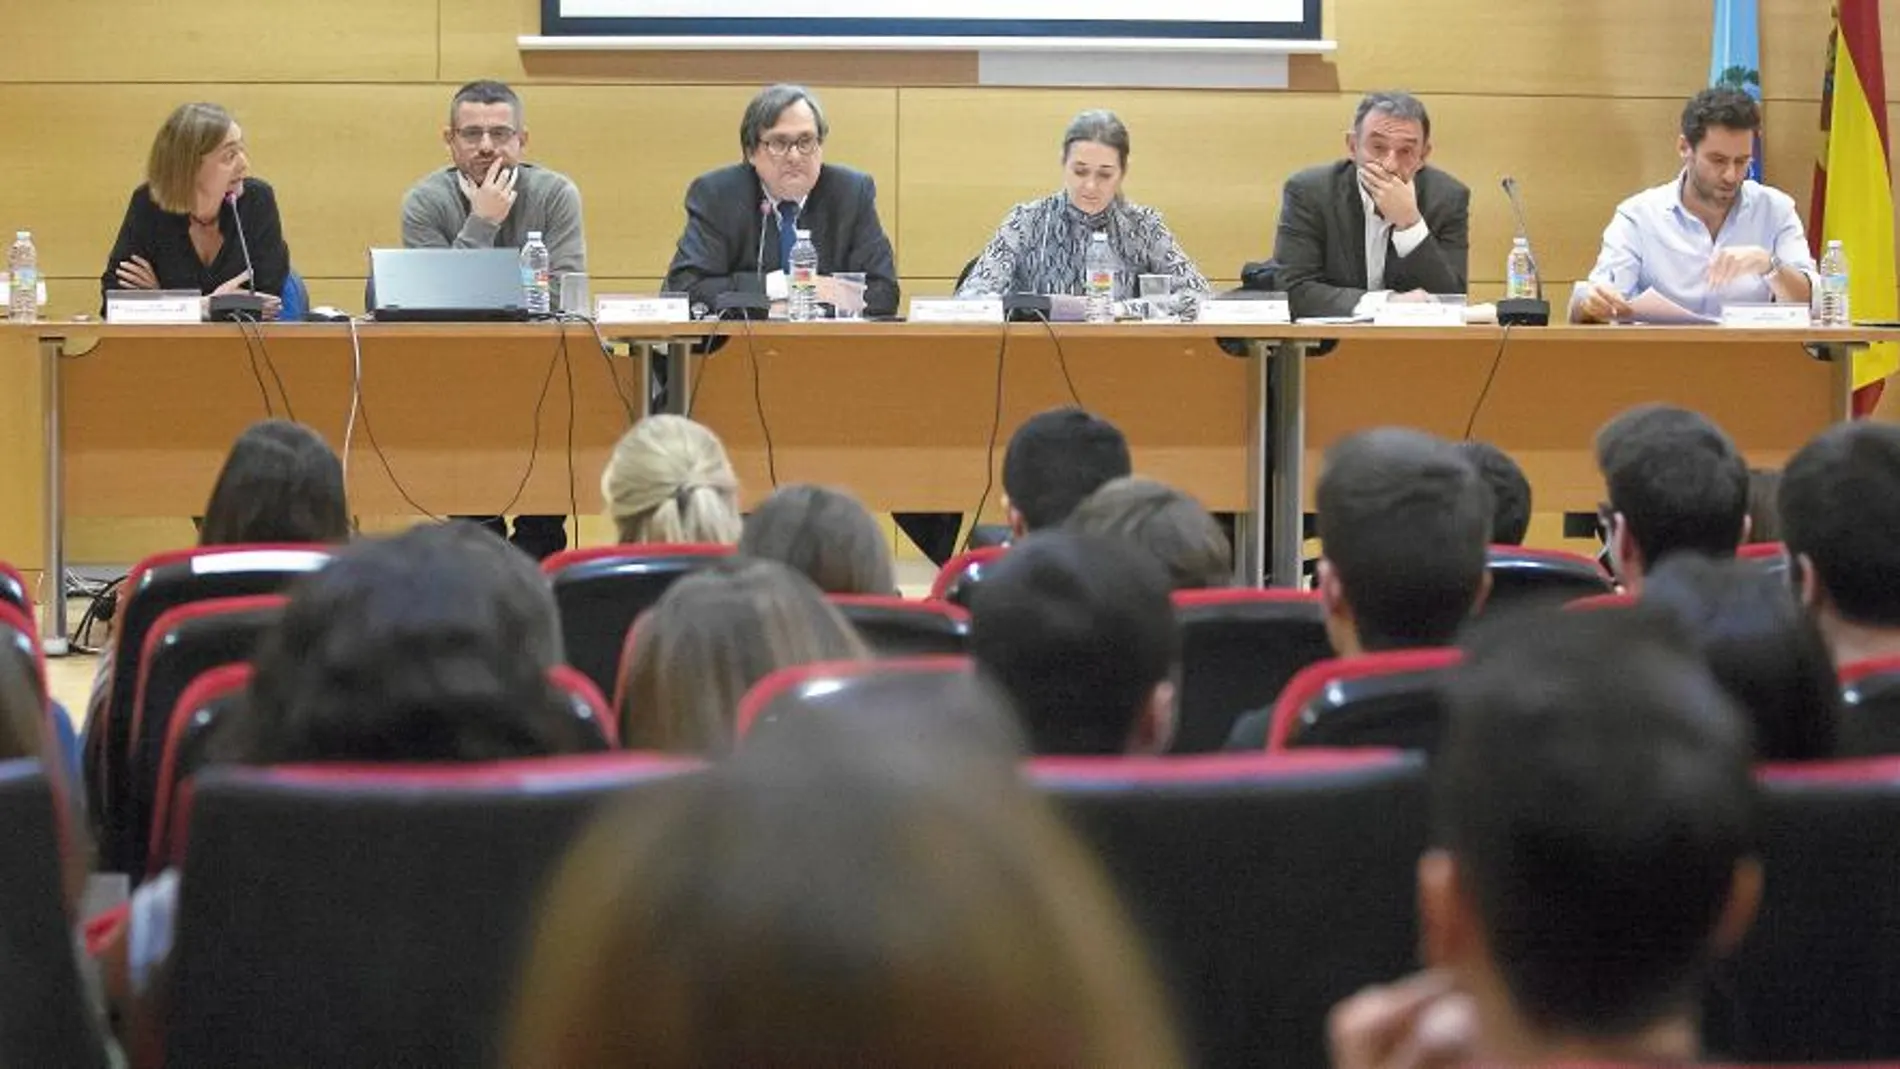 Luz Rodríguez (PSOE), Iván Ayala, (Podemos), Francisco Marhuenda, Marta Rivera (C’s), Enrique Santiago (IU) y Borja Semper (PP)